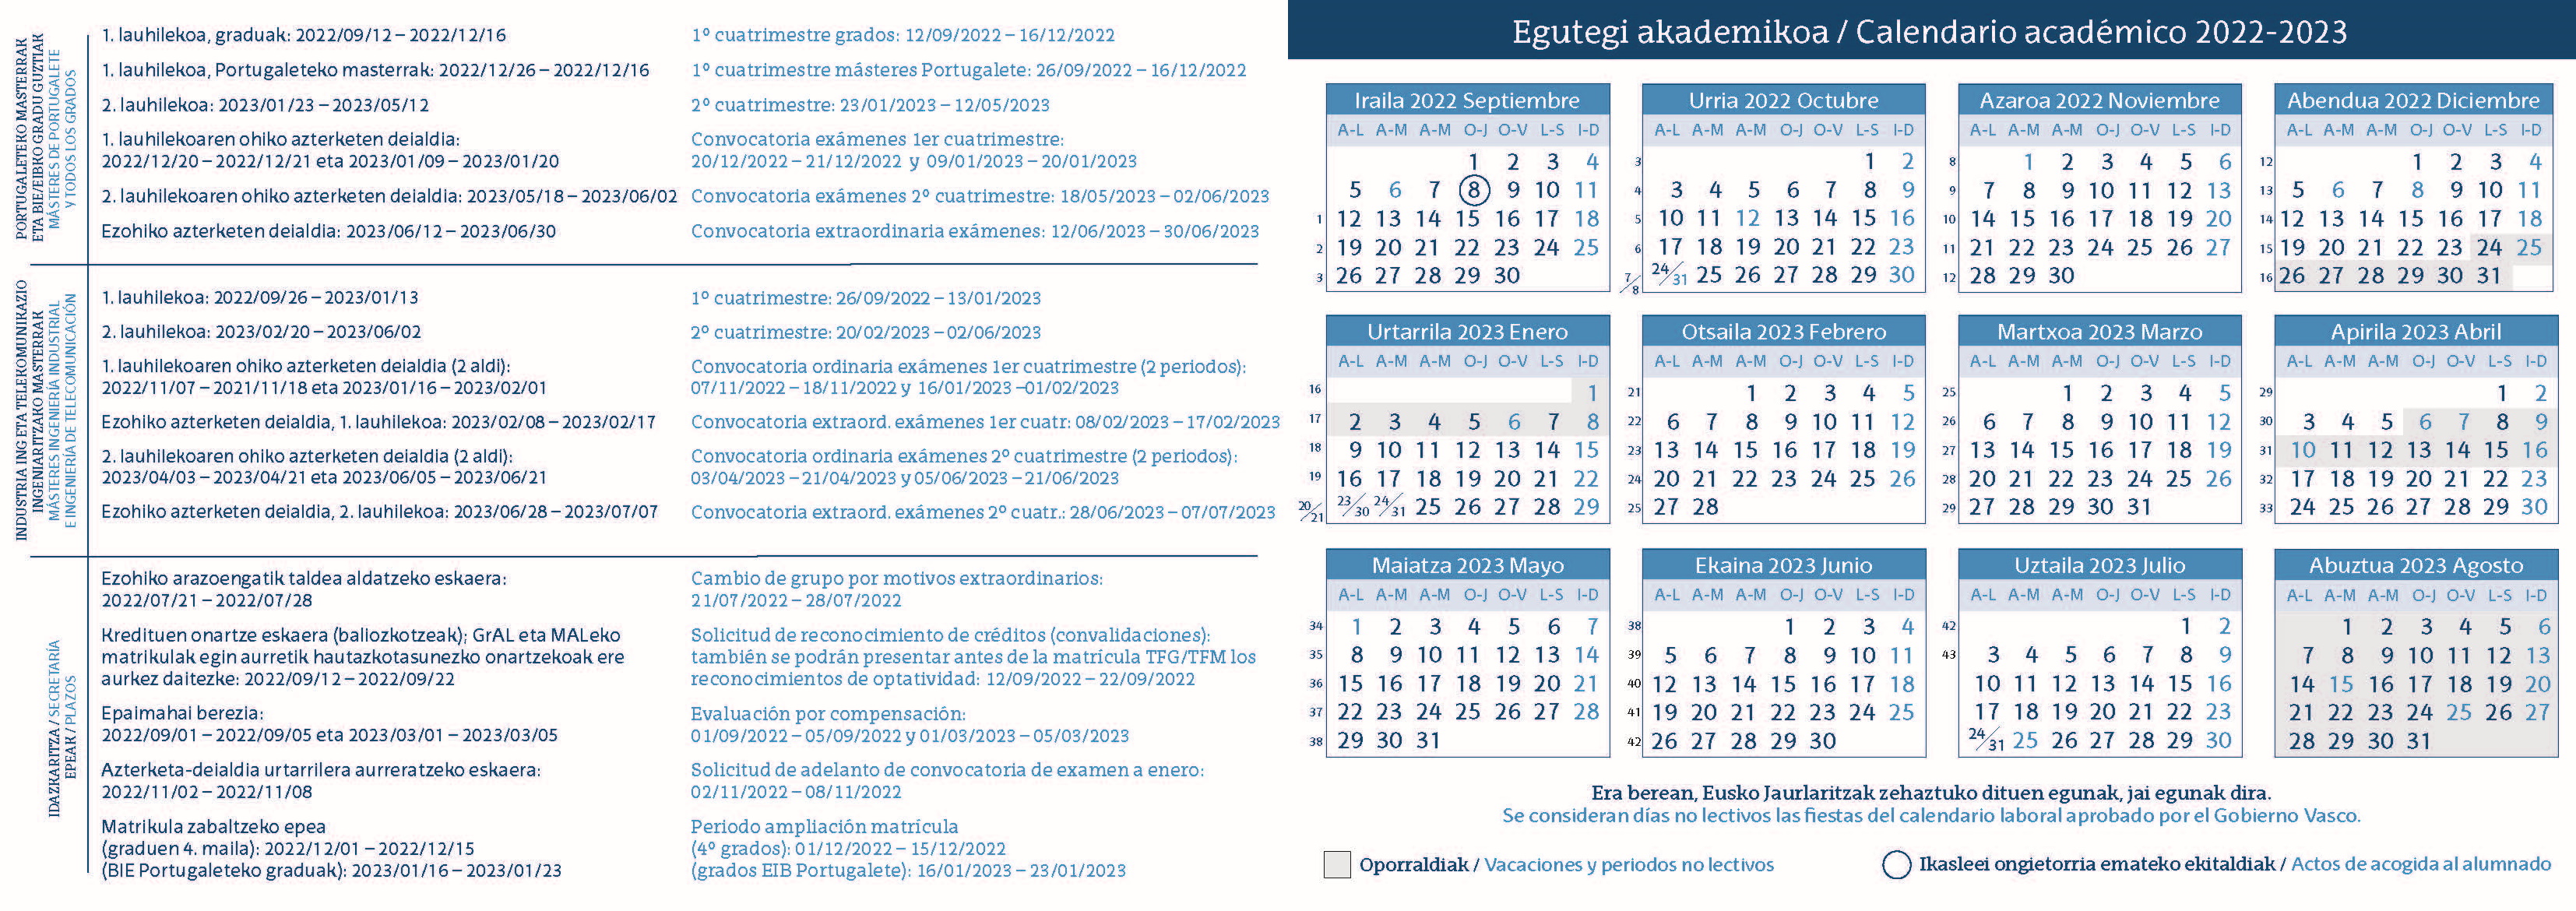 Calendario académico 2022/2023